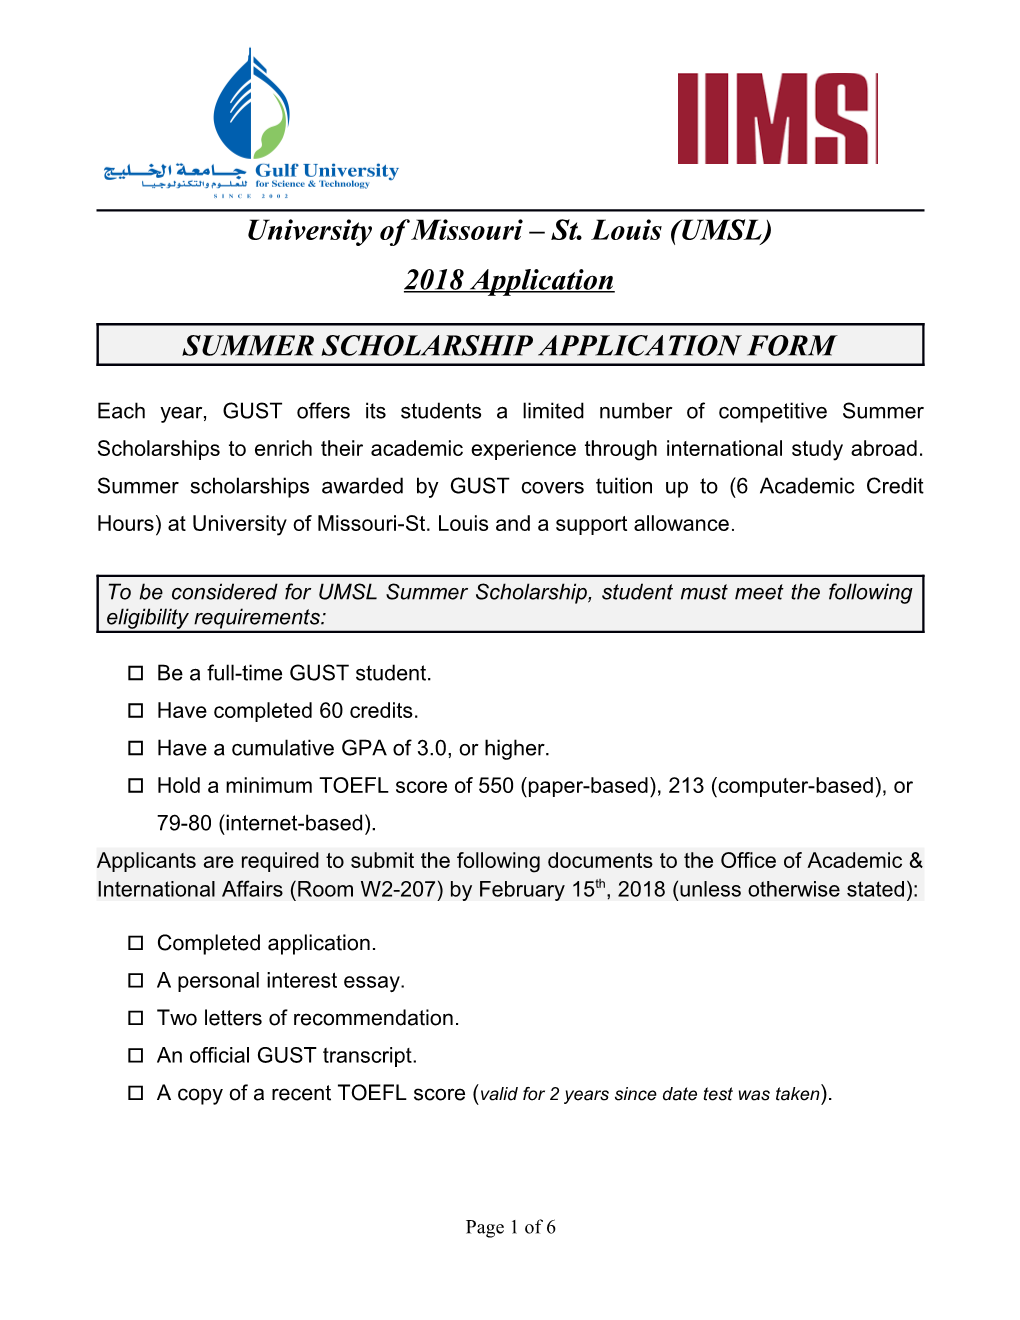 2006 Summer Scholarship Application Form